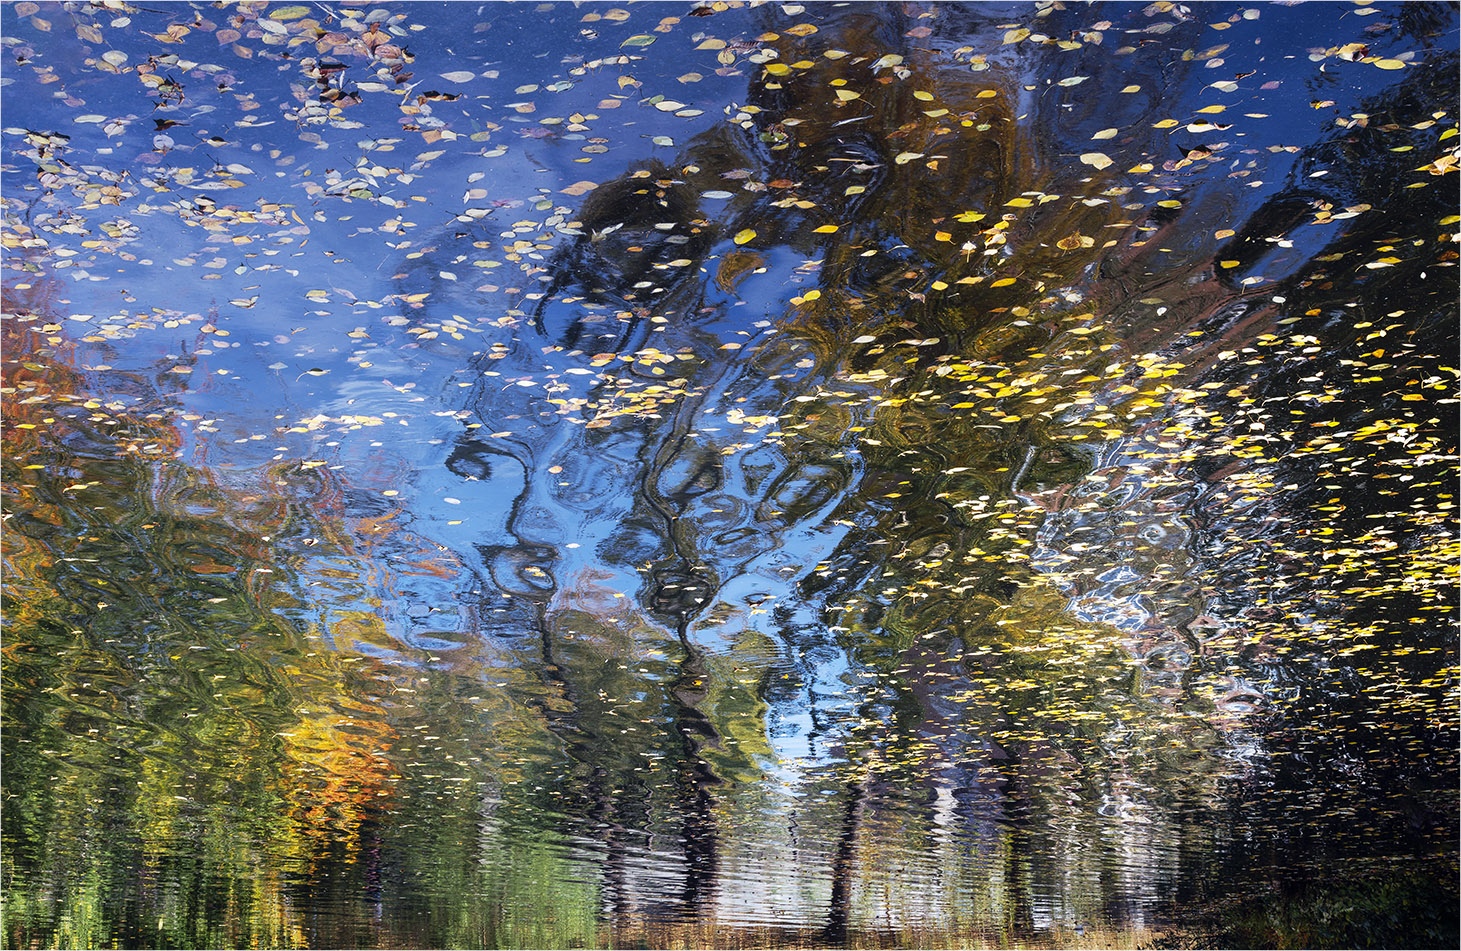 photo "***" tags: abstract, landscape, autumn, pond, деревья, желтые листья, отражение в воде